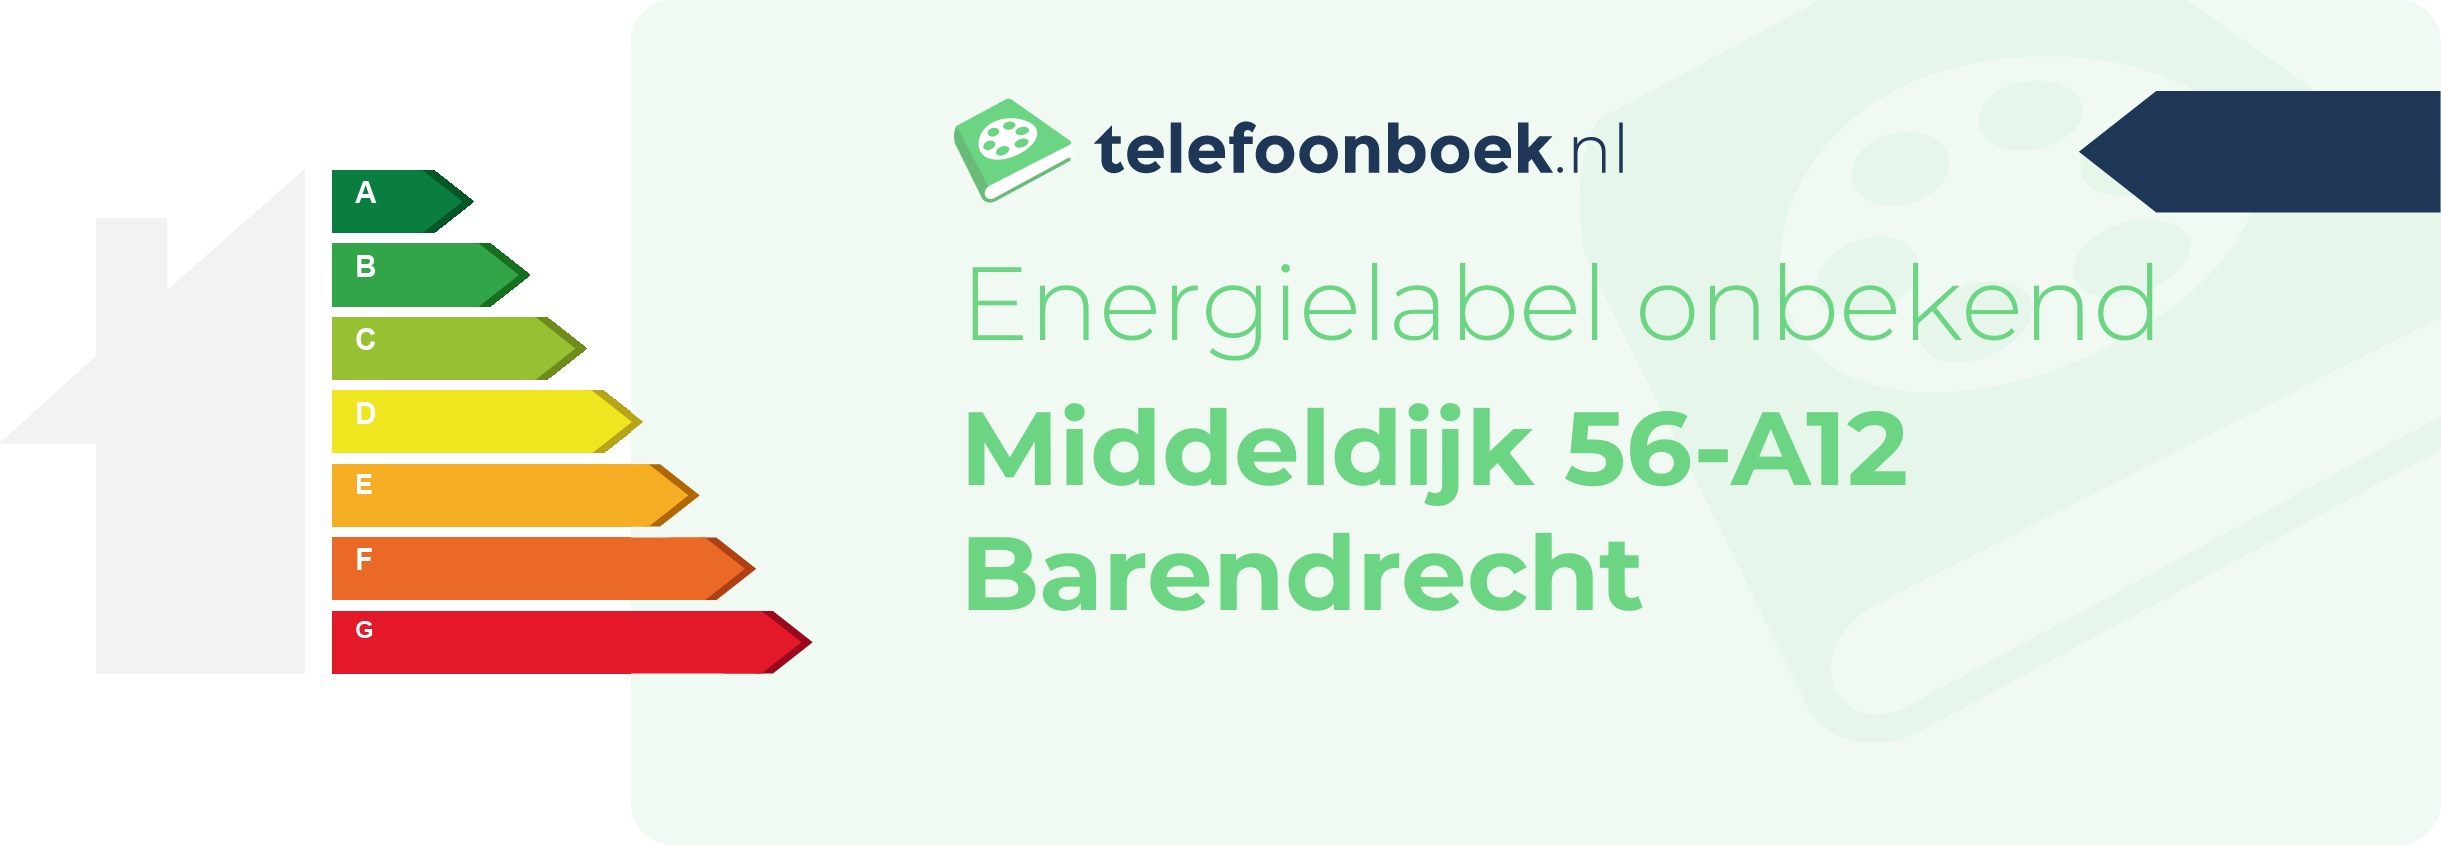 Energielabel Middeldijk 56-A12 Barendrecht